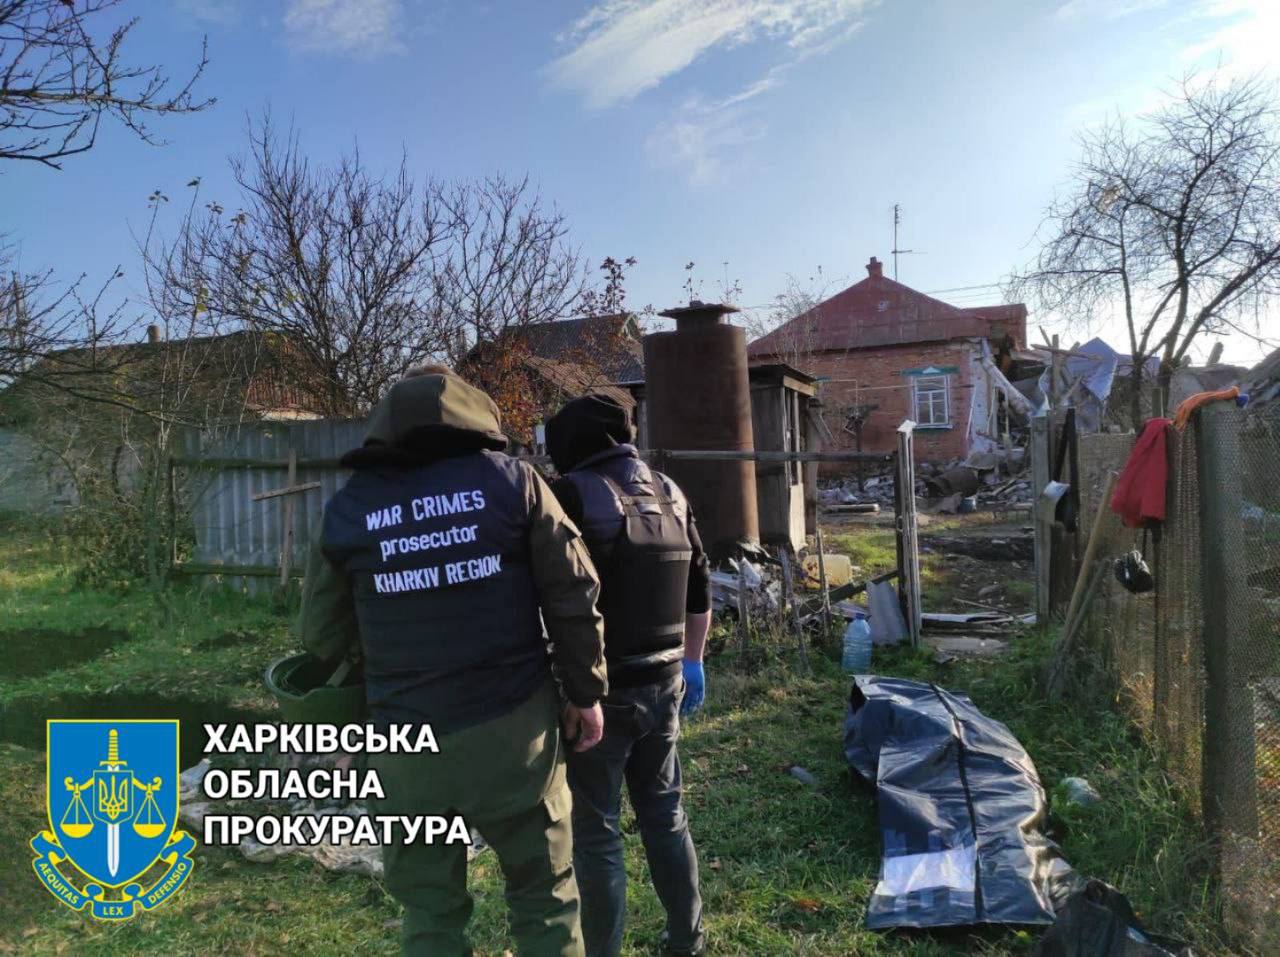 На Харьковщине эксгумировали тела четырех жертв российской армии (фото)